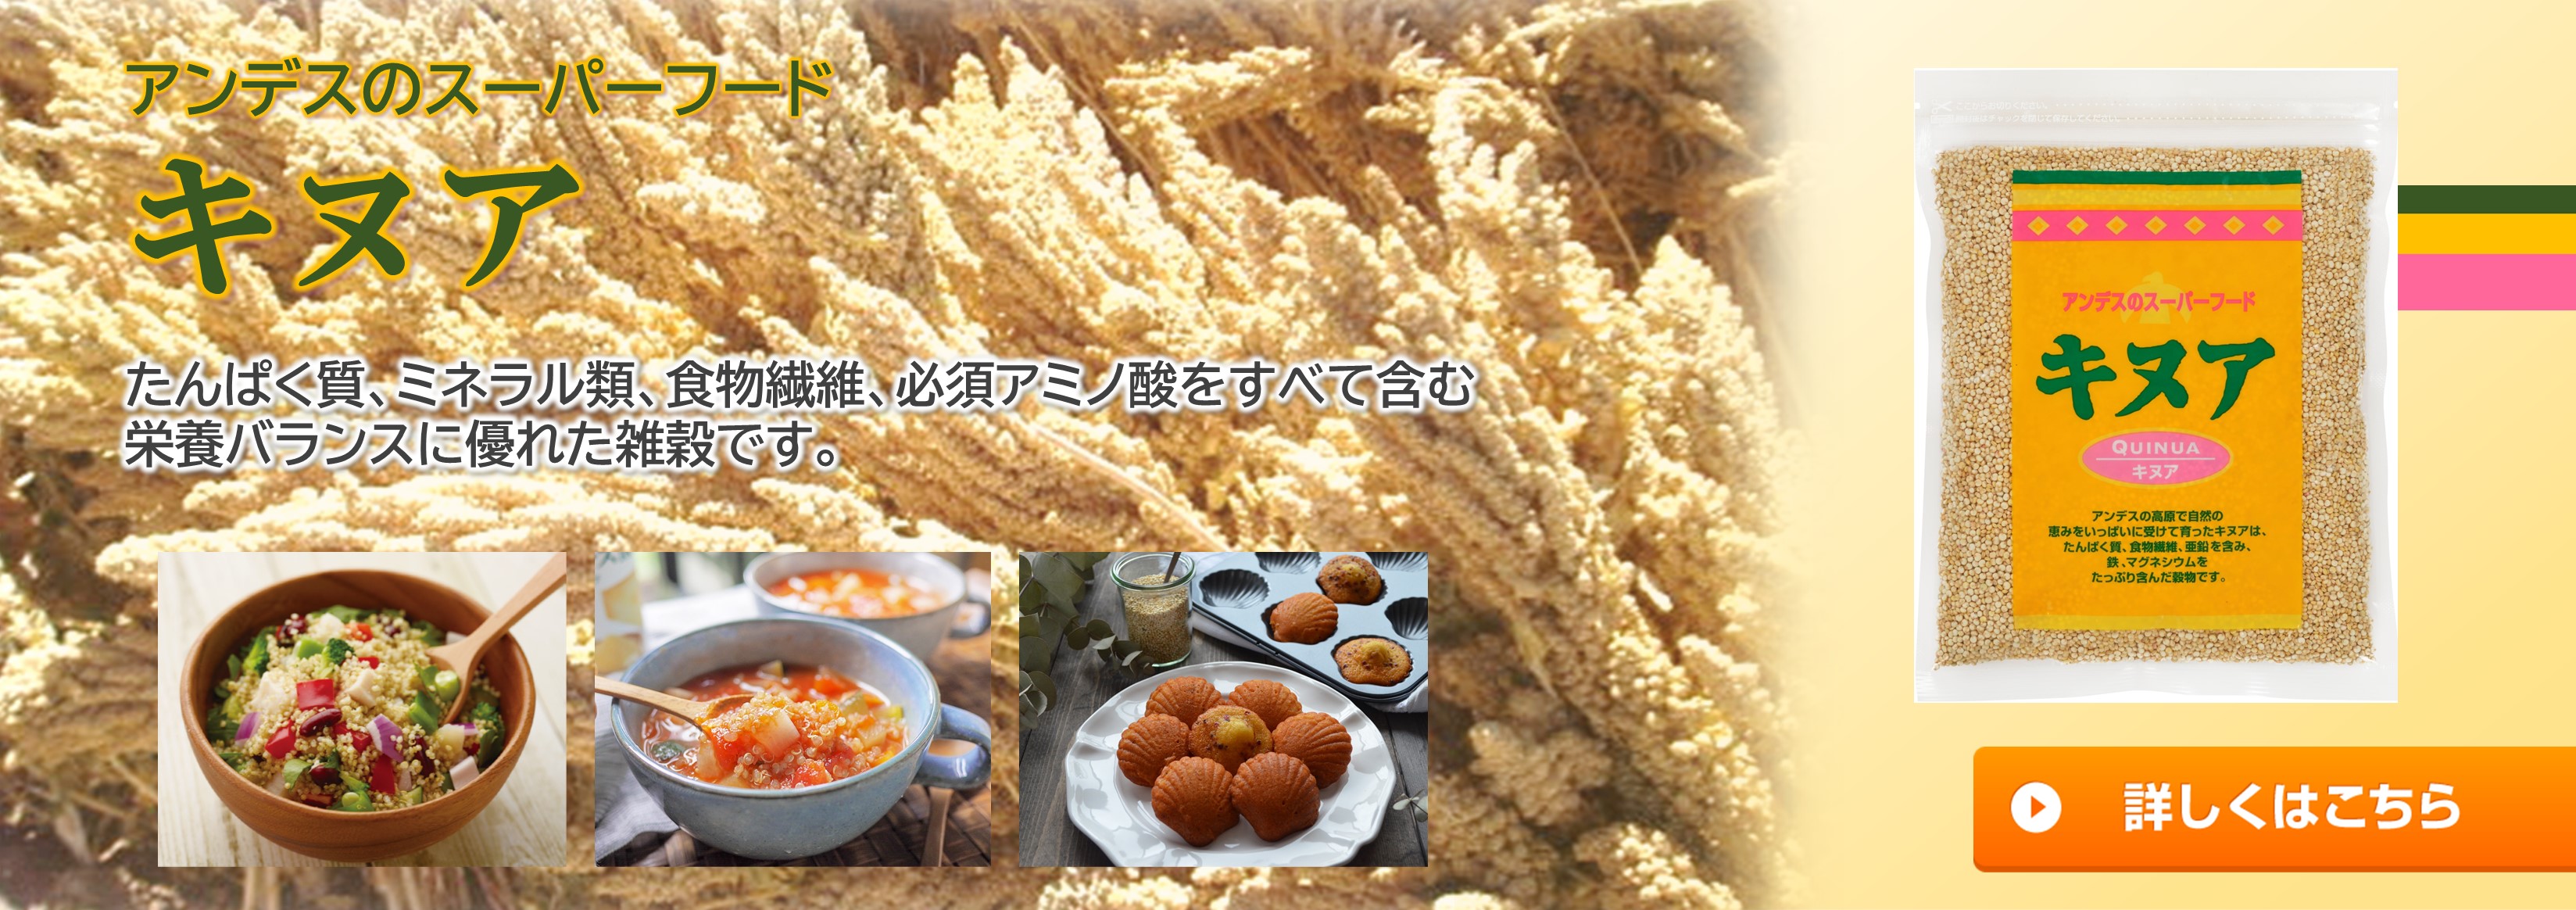 アンデスのスーパー穀物キヌア。栄養バランスの優れた穀物です。詳しくはこちら。